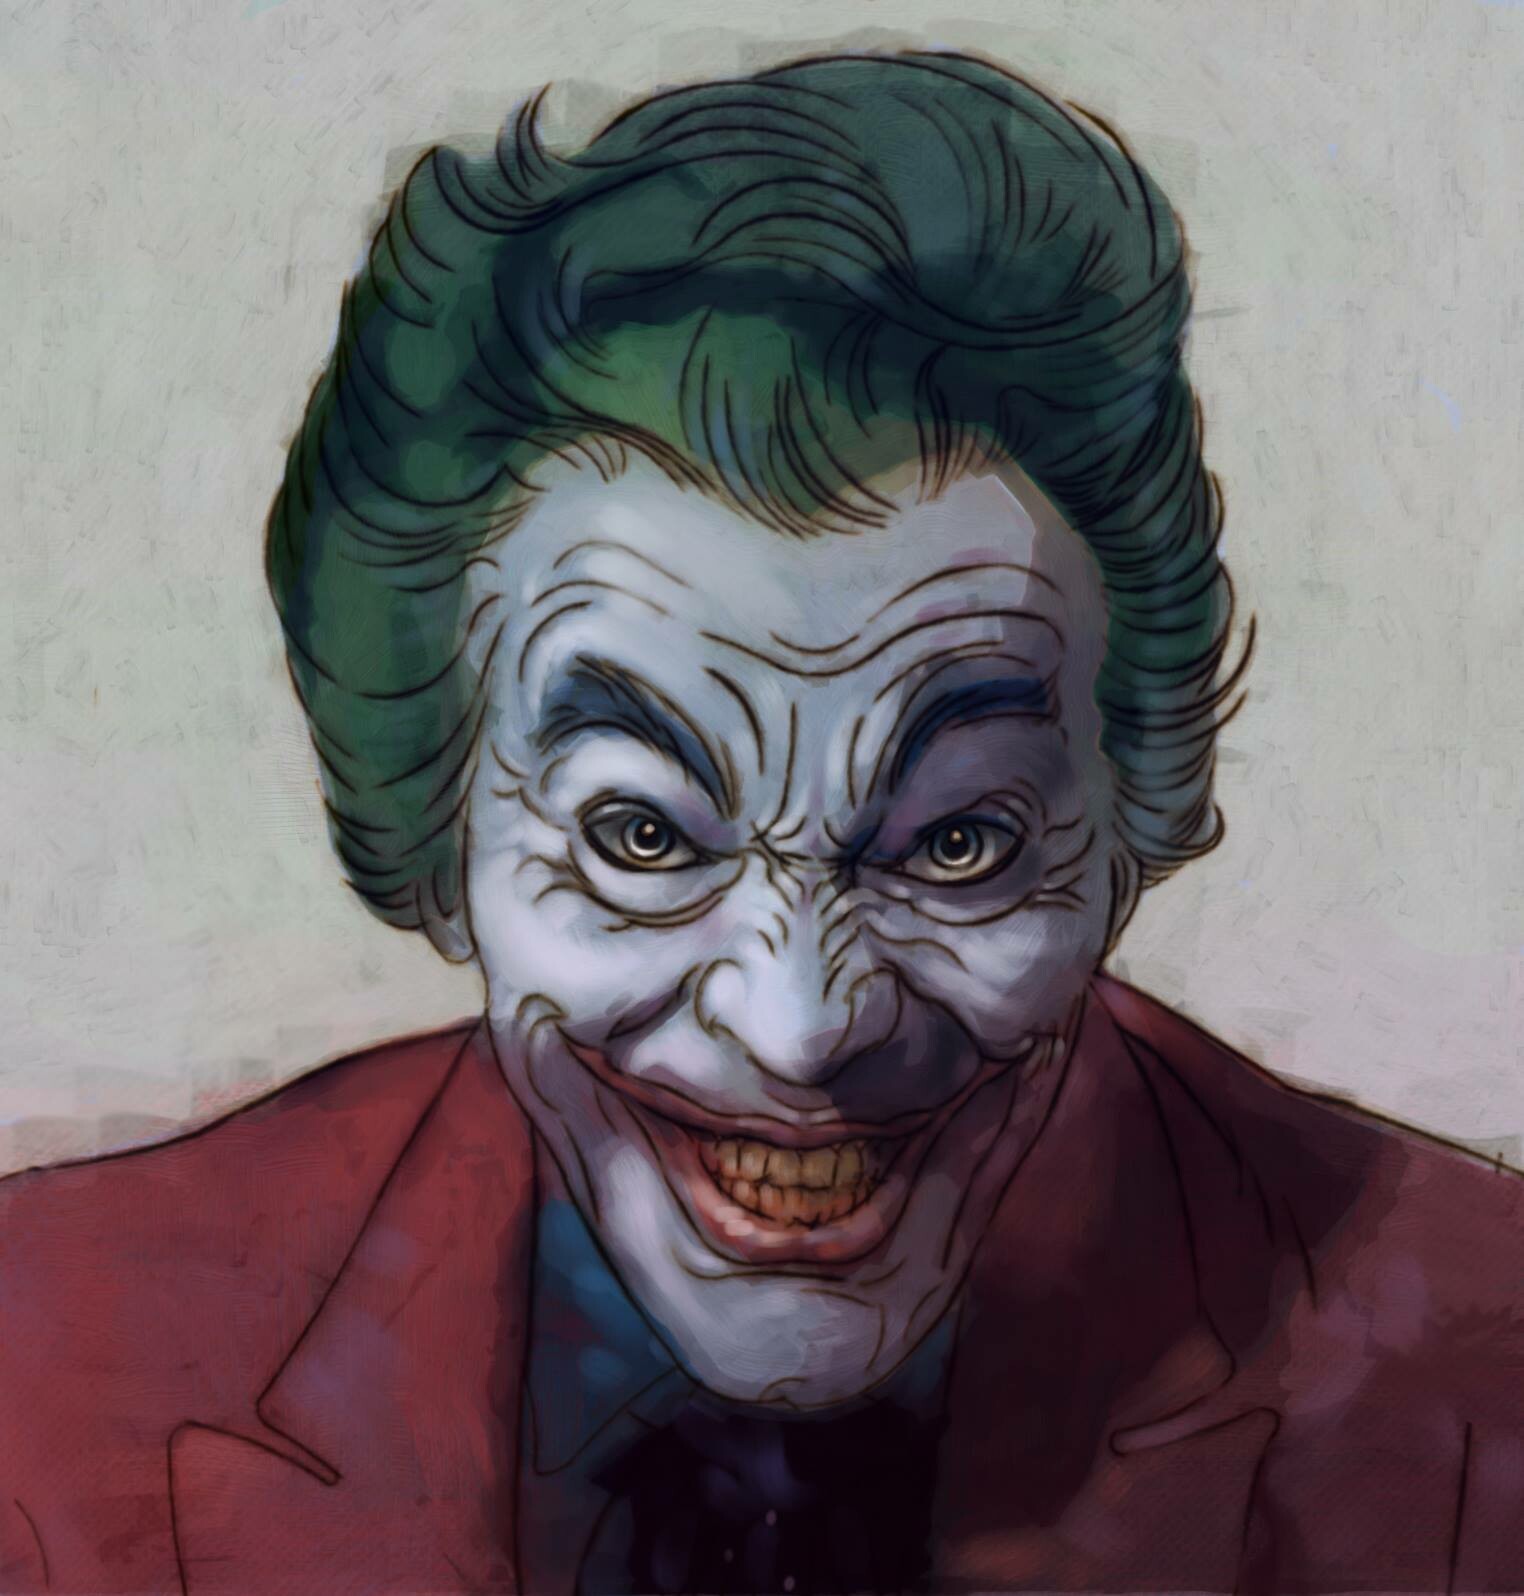 ArtStation - O.G. Joker